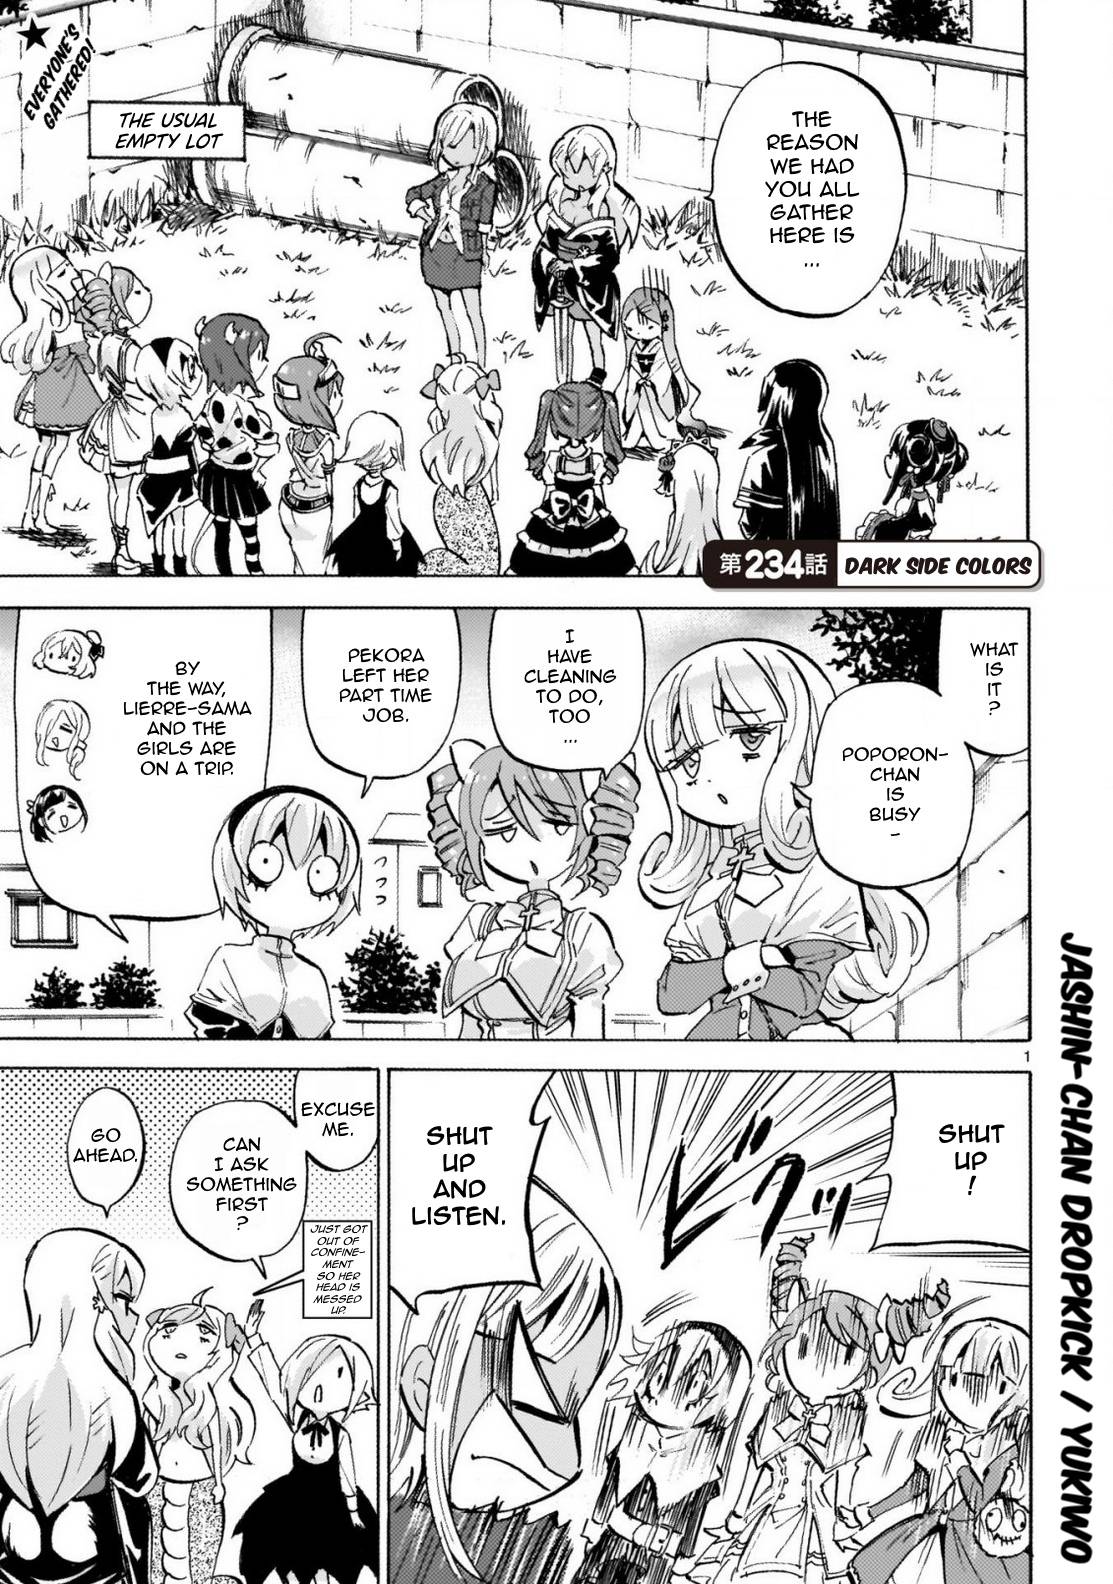 Jashin-chan Dropkick chapter 239 page 1